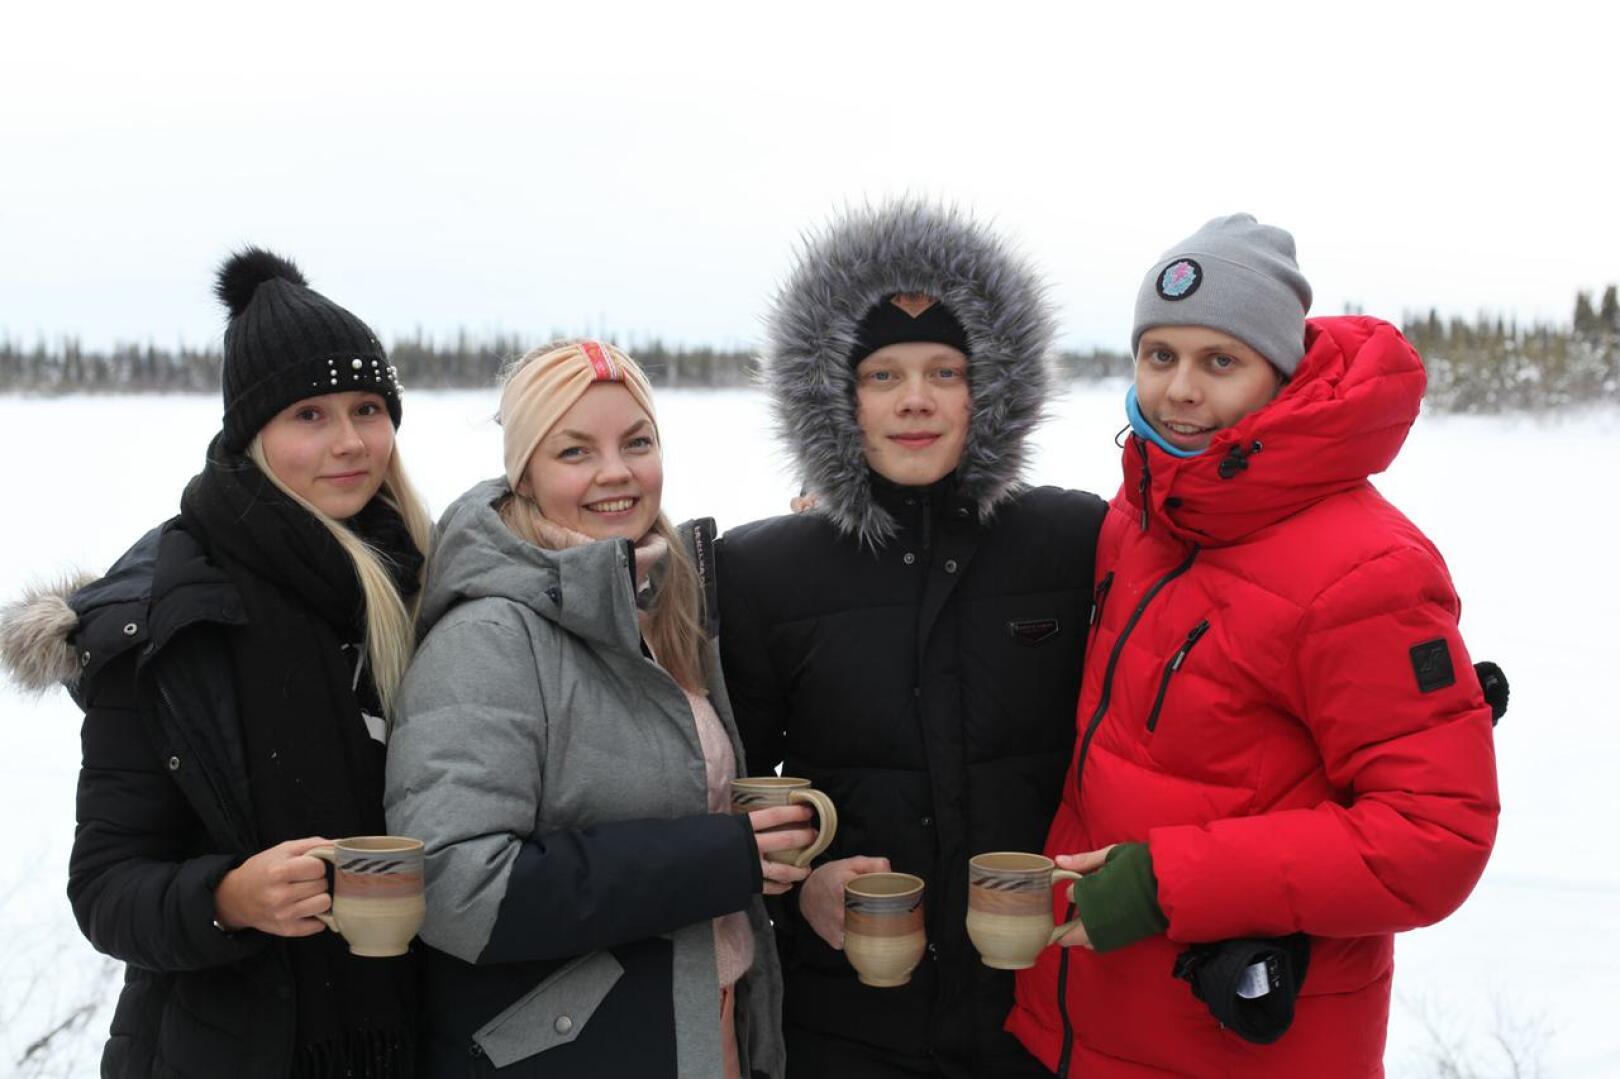 Somevaikuttajat Mandimai Sundberg, Miisa Nuorgam, Kasper Edel ja Jesse Sarkkinen lähtivät Kanadaan arktisiin oloihin tarkoituksenaan olla kolme viikkoa ilman älylaitteita ja nettiä. Viikon kuluttua korona kuitenkin sotki suunnitelmat.